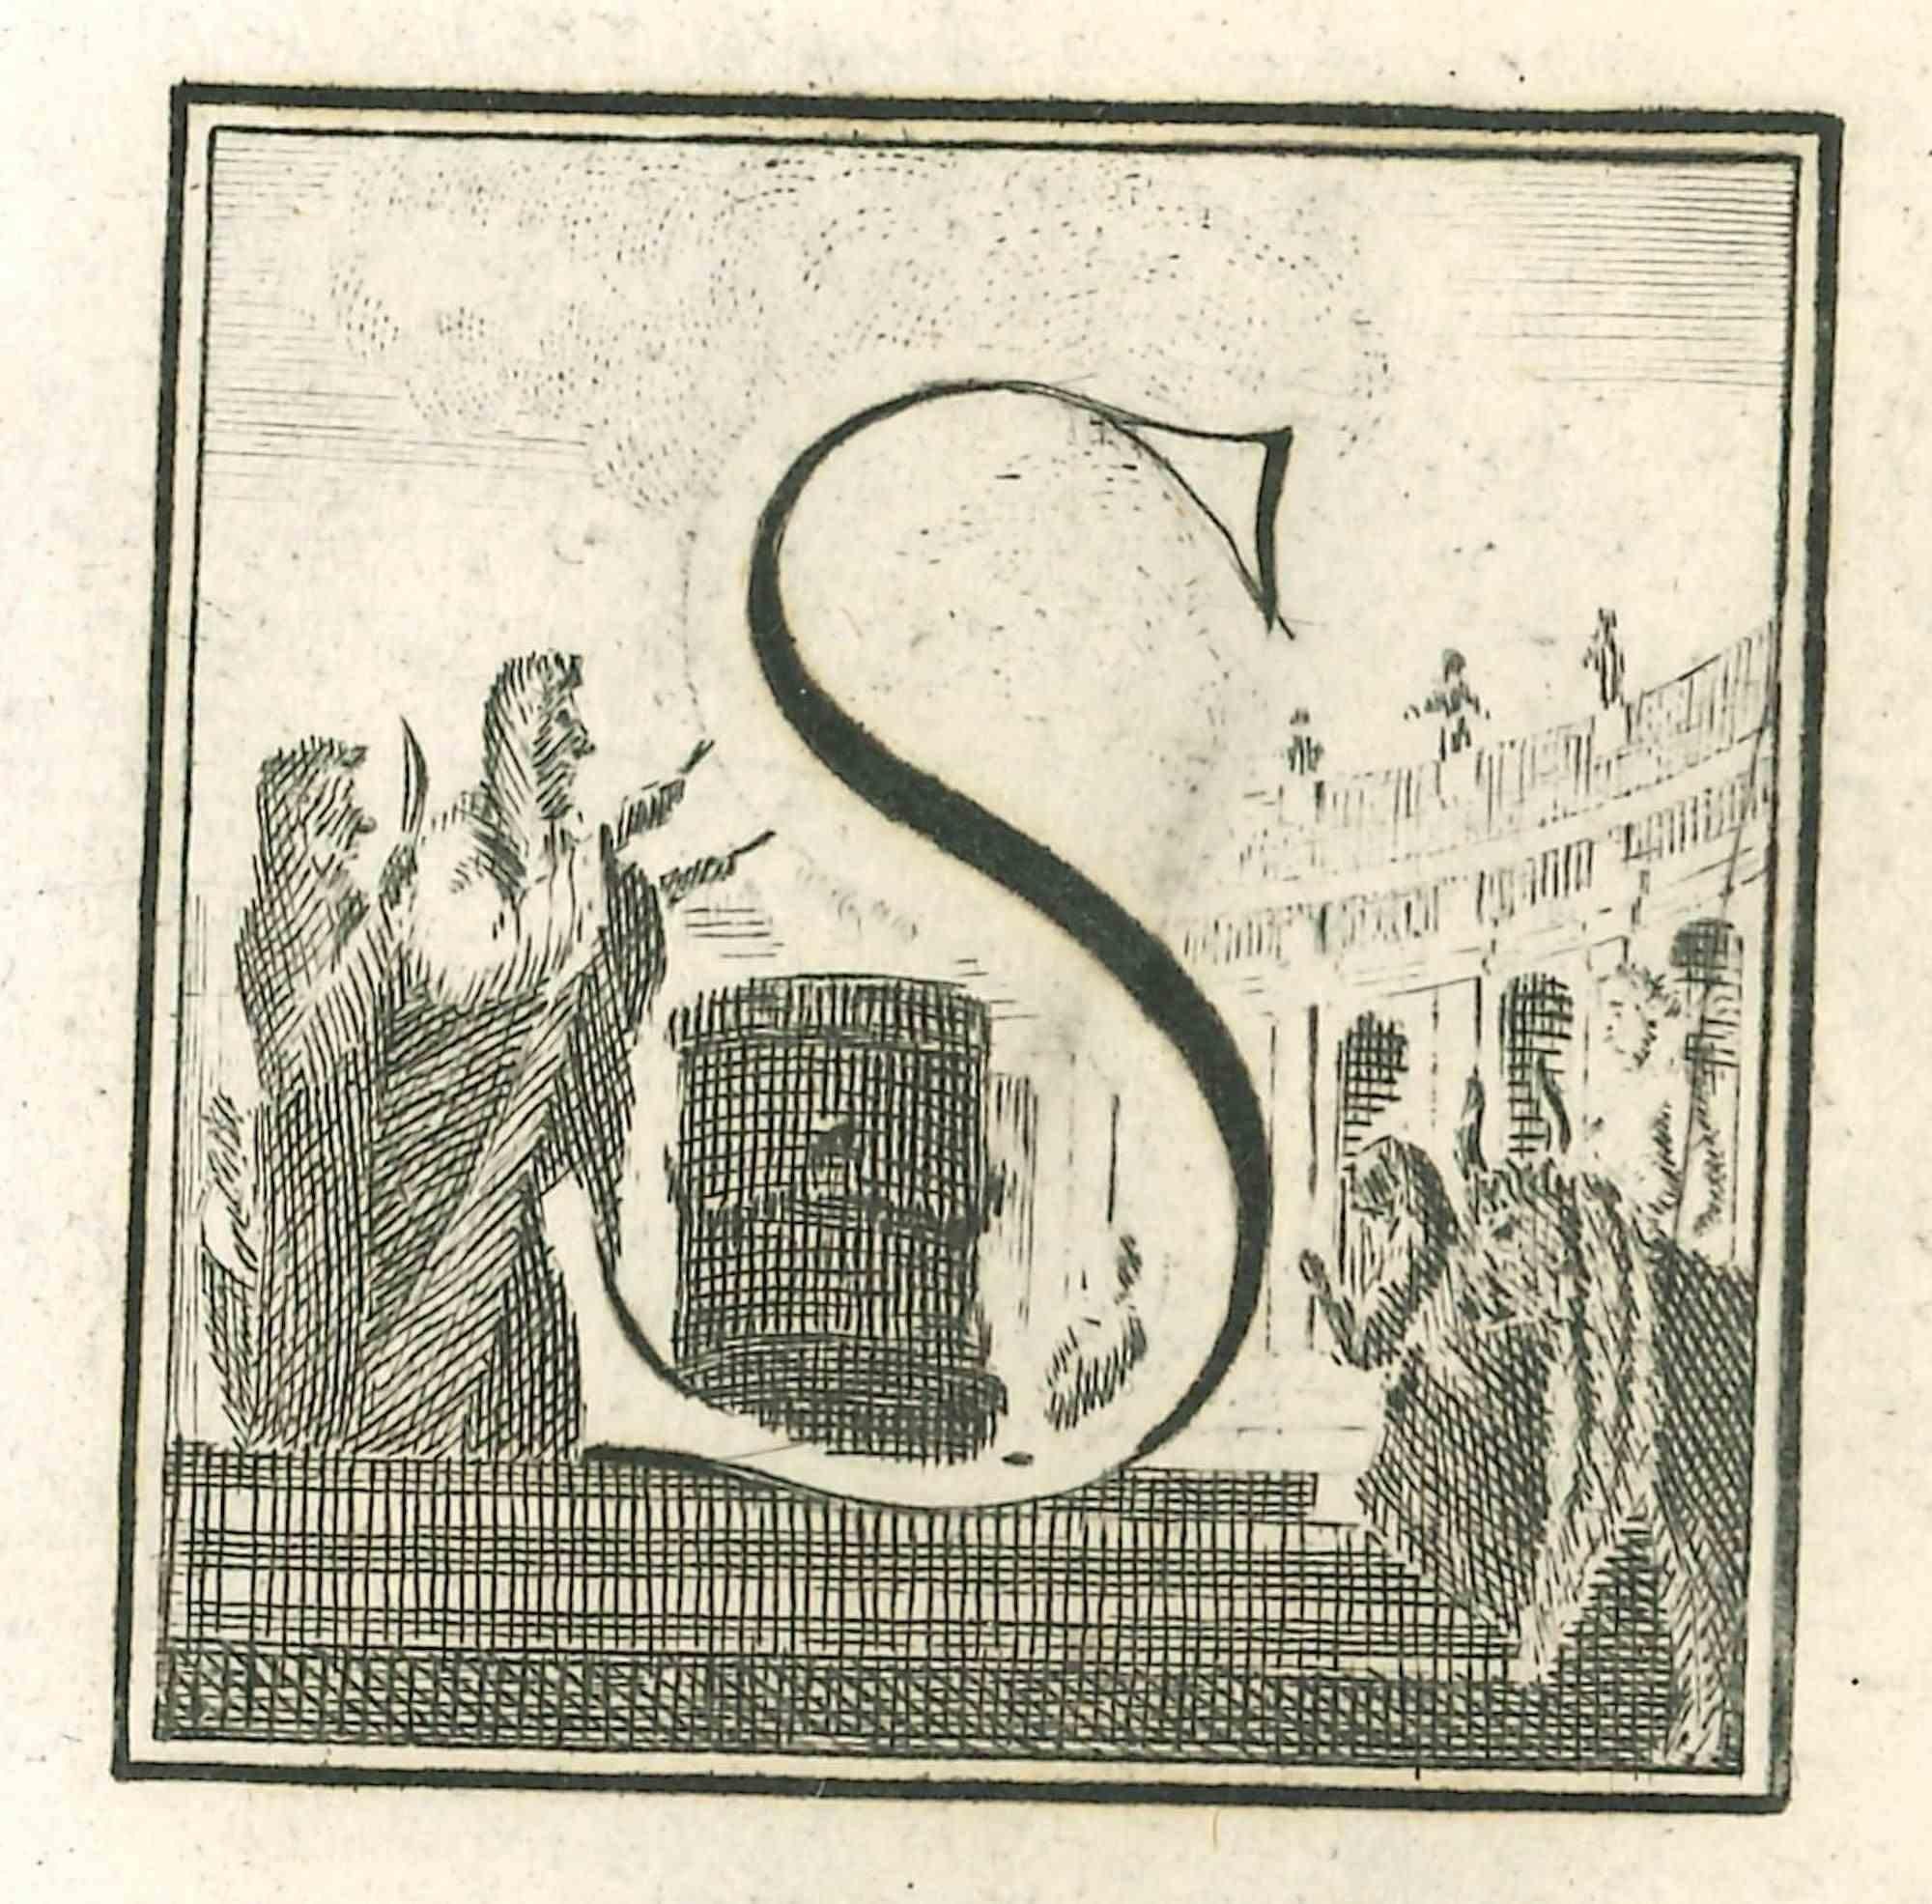 Lettre de l'alphabet S,  de la série "Antiquités d'Herculanum", est une gravure sur papier réalisée par Luigi Vanvitelli au 18ème siècle.

Bonnes conditions.

La gravure appartient à la suite d'estampes "Antiquités d'Herculanum exposées" (titre